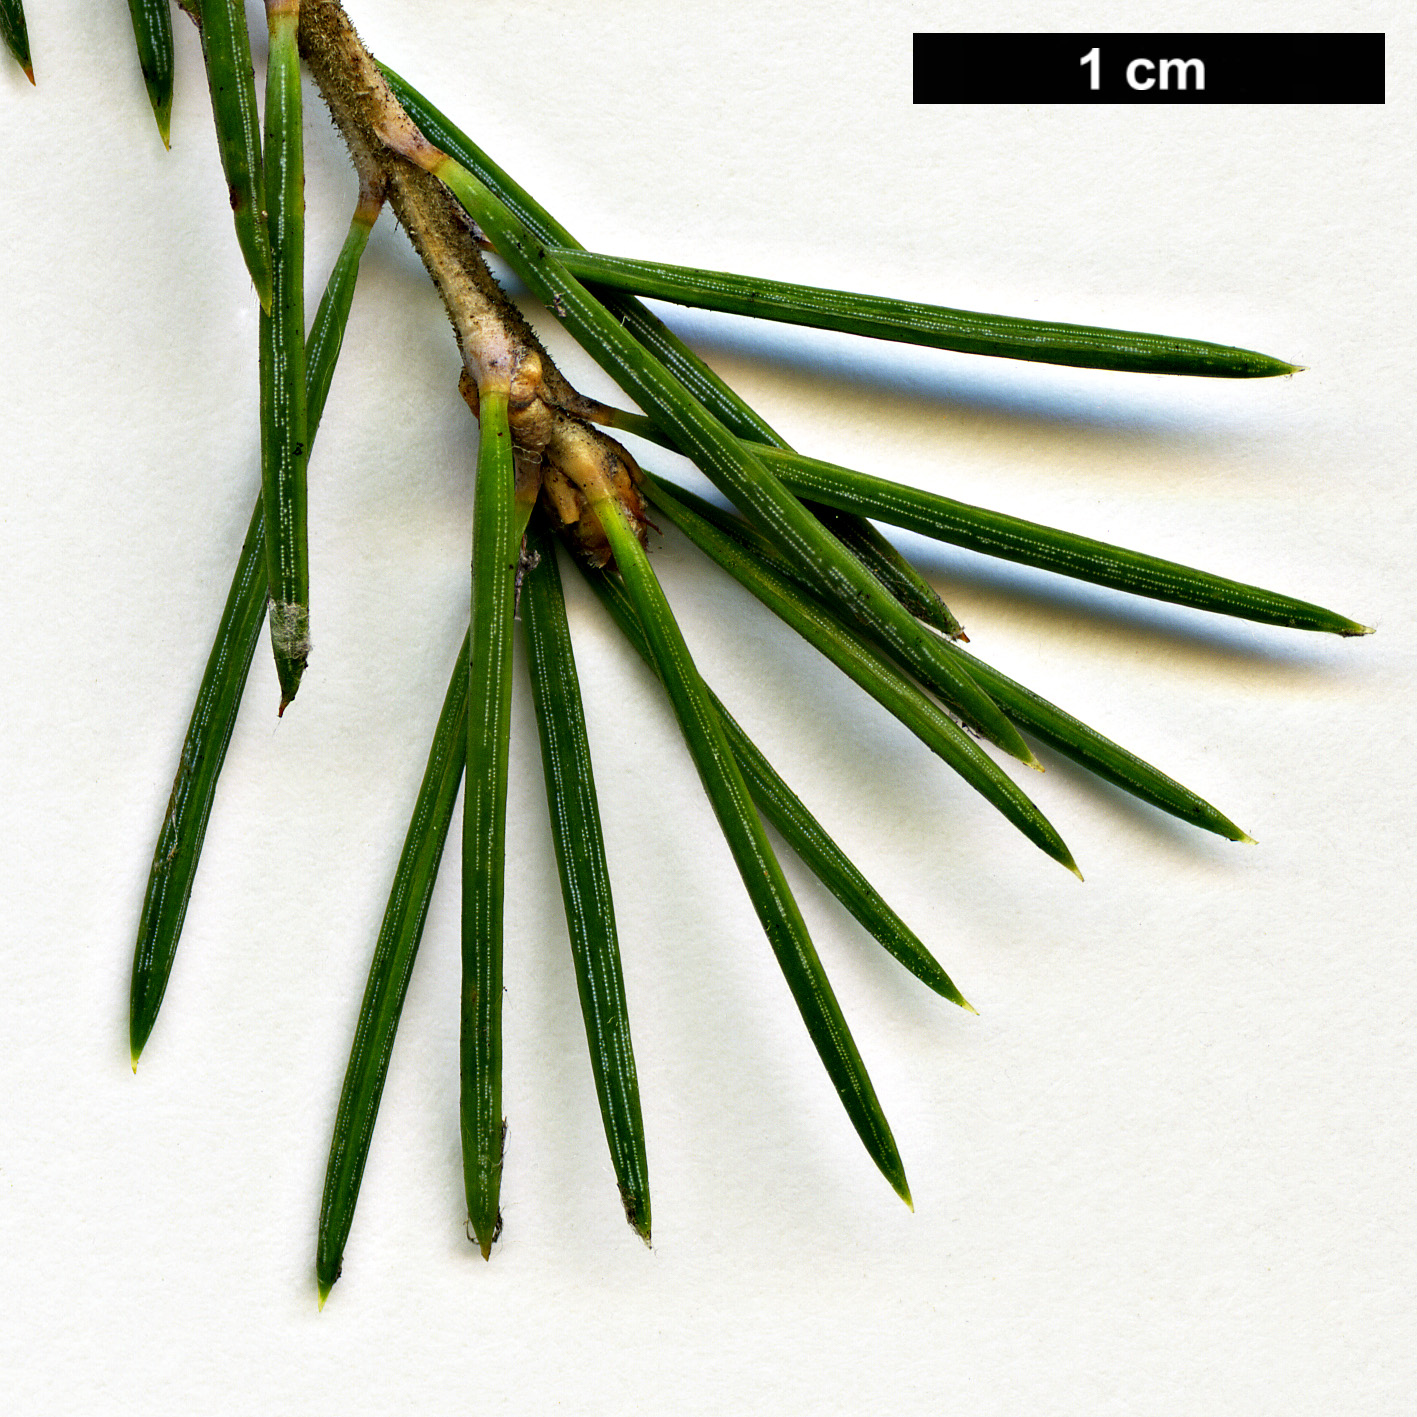 High resolution image: Family: Pinaceae - Genus: Cedrus - Taxon: deodara